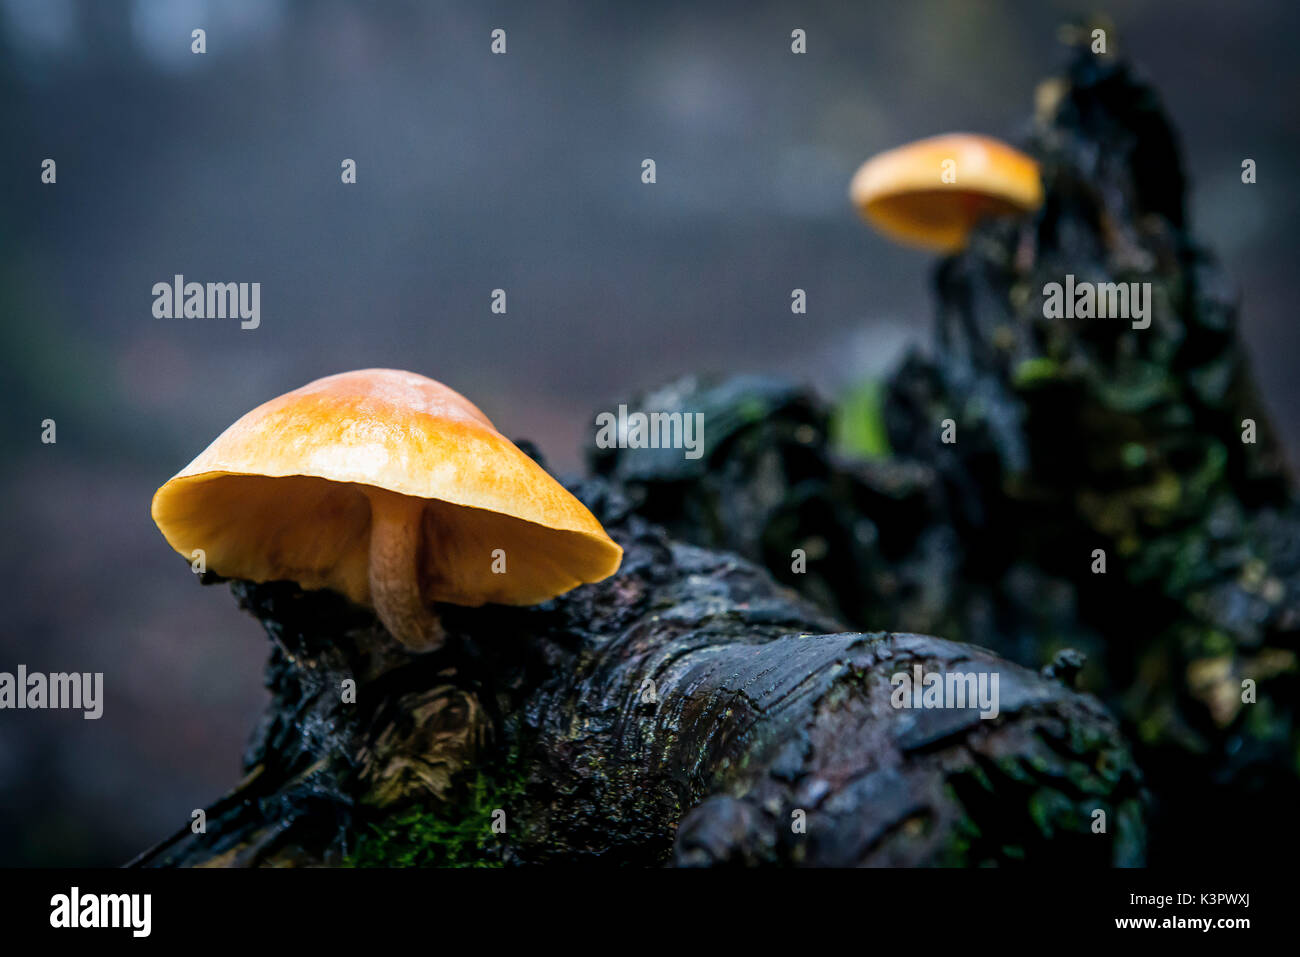 Sassofratino Reserve, Foreste Casentinesi National Park, Badia Prataglia, Tuscany, Italy, Europe. Mushrooms on wet branch. Stock Photo